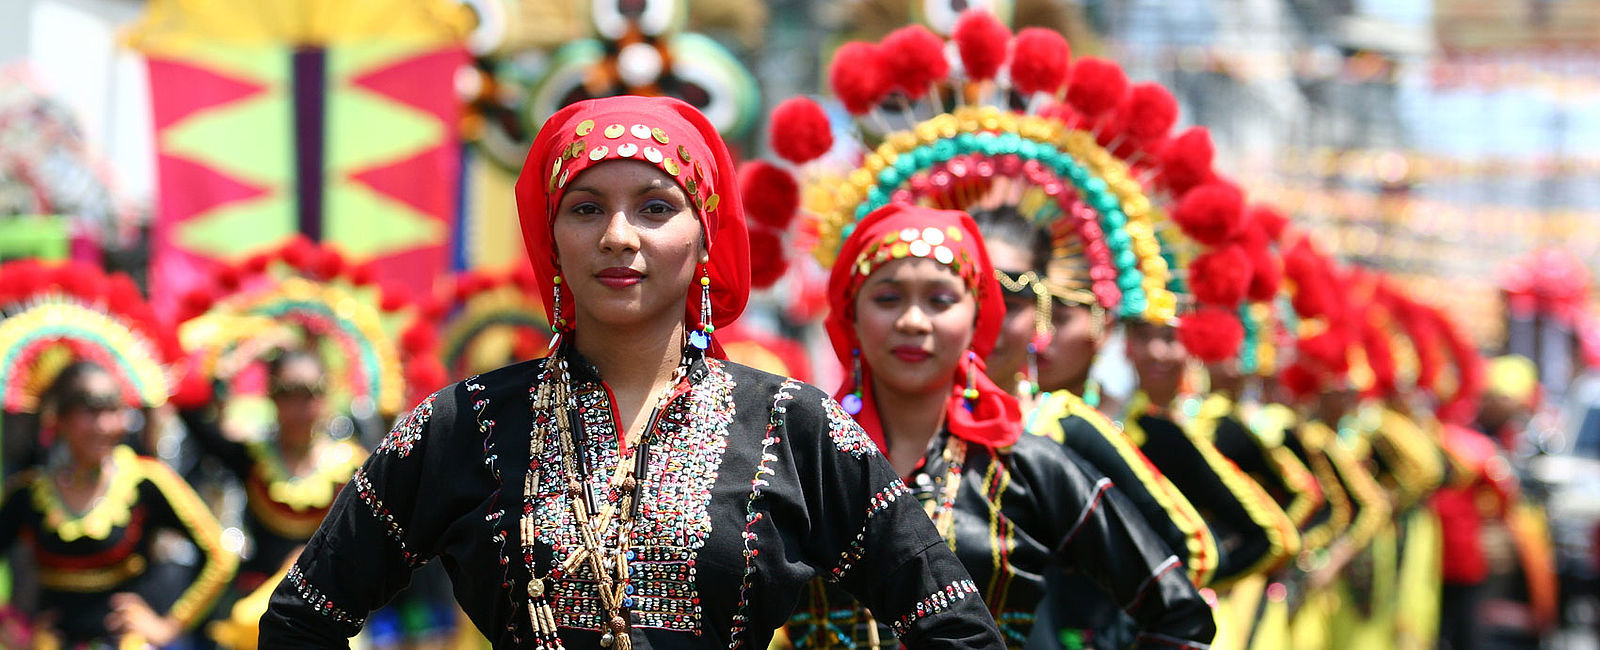 PHILIPPINEN - DAS LAND, DAS NIEMALS SCHLÄFT
 Der bunte Festivalkalender der Philippinen lockt Einheimische und Touristen auf die Straßen 